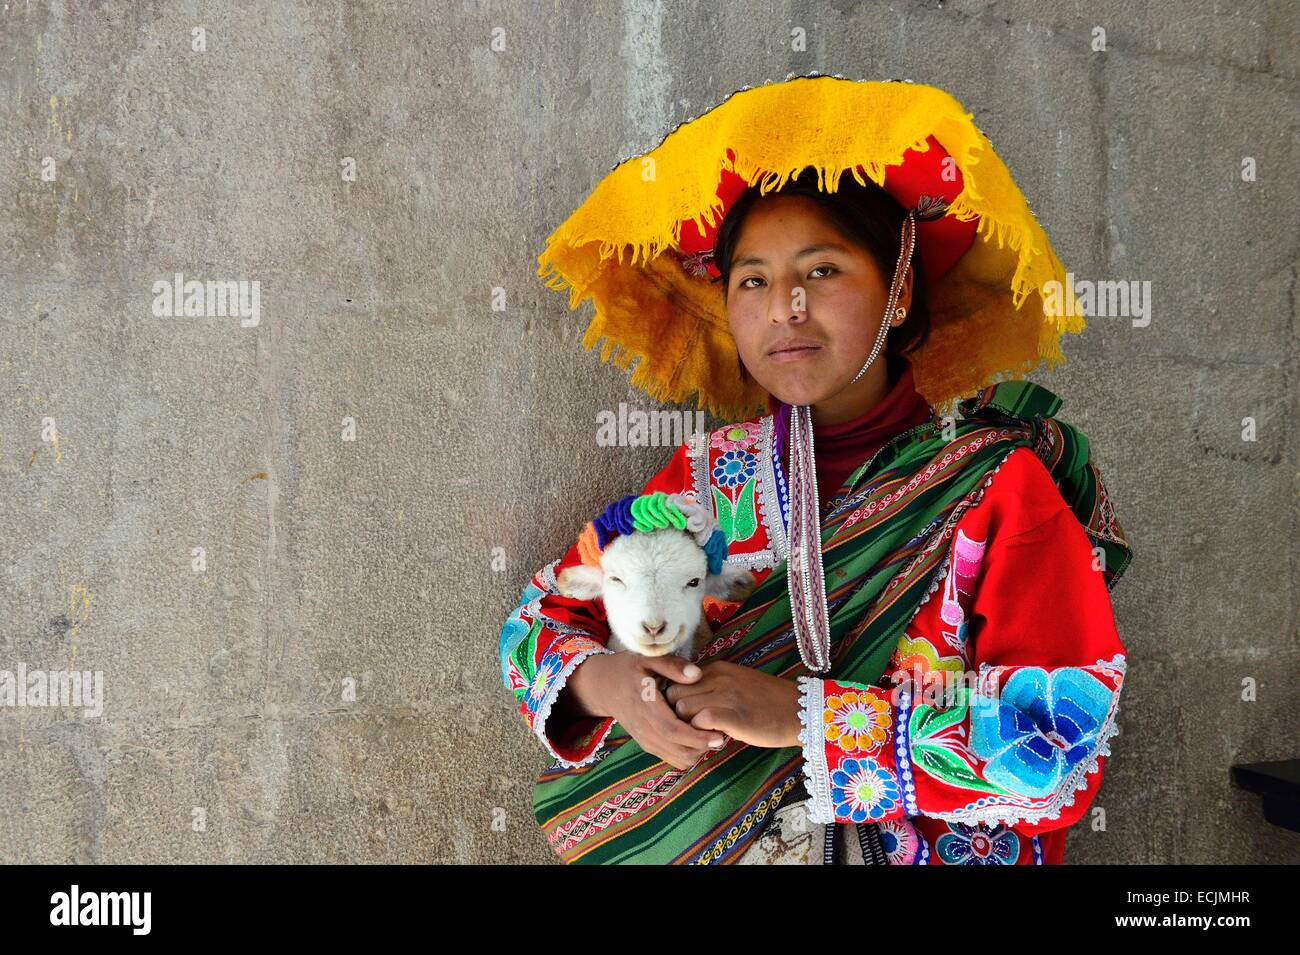 Peru, Cuzco Provinz, Cuzco, aufgeführt als Weltkulturerbe der UNESCO, Corpus Christi fest, für mehrere Tage im Juni, Parade durch die Straßen, die Jungfrau und der Heiligen Stadt, Youg peruanische Mädchen Stockfoto